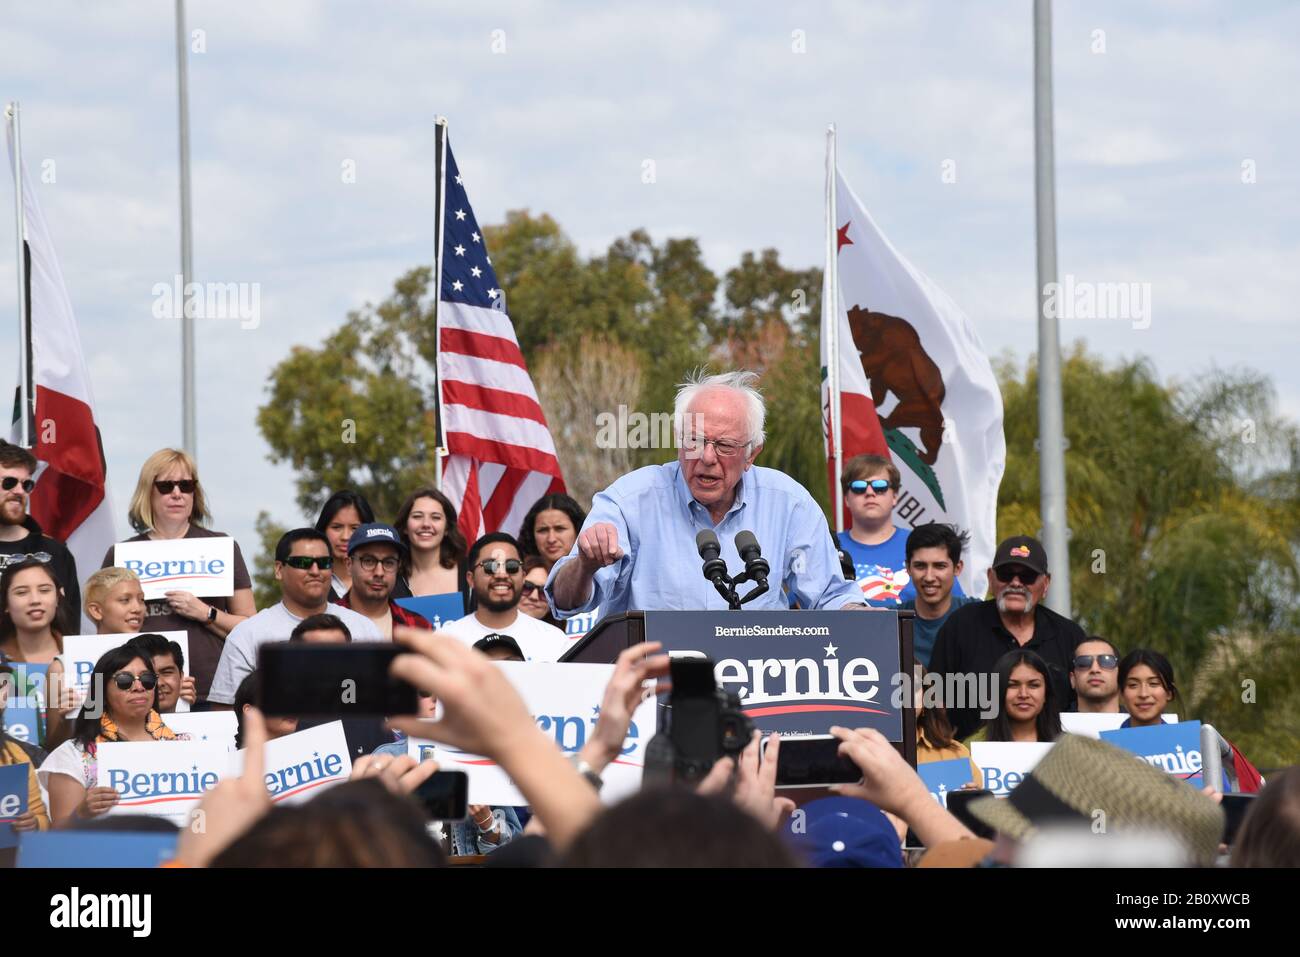 Santa ANA, KALIFORNIEN - 21. FEBRUAR 2020: Bernie Sanders Rally. Sanders auf dem Podium von Anhängern bei einer Freiluft-Rallye umzingelt. Stockfoto